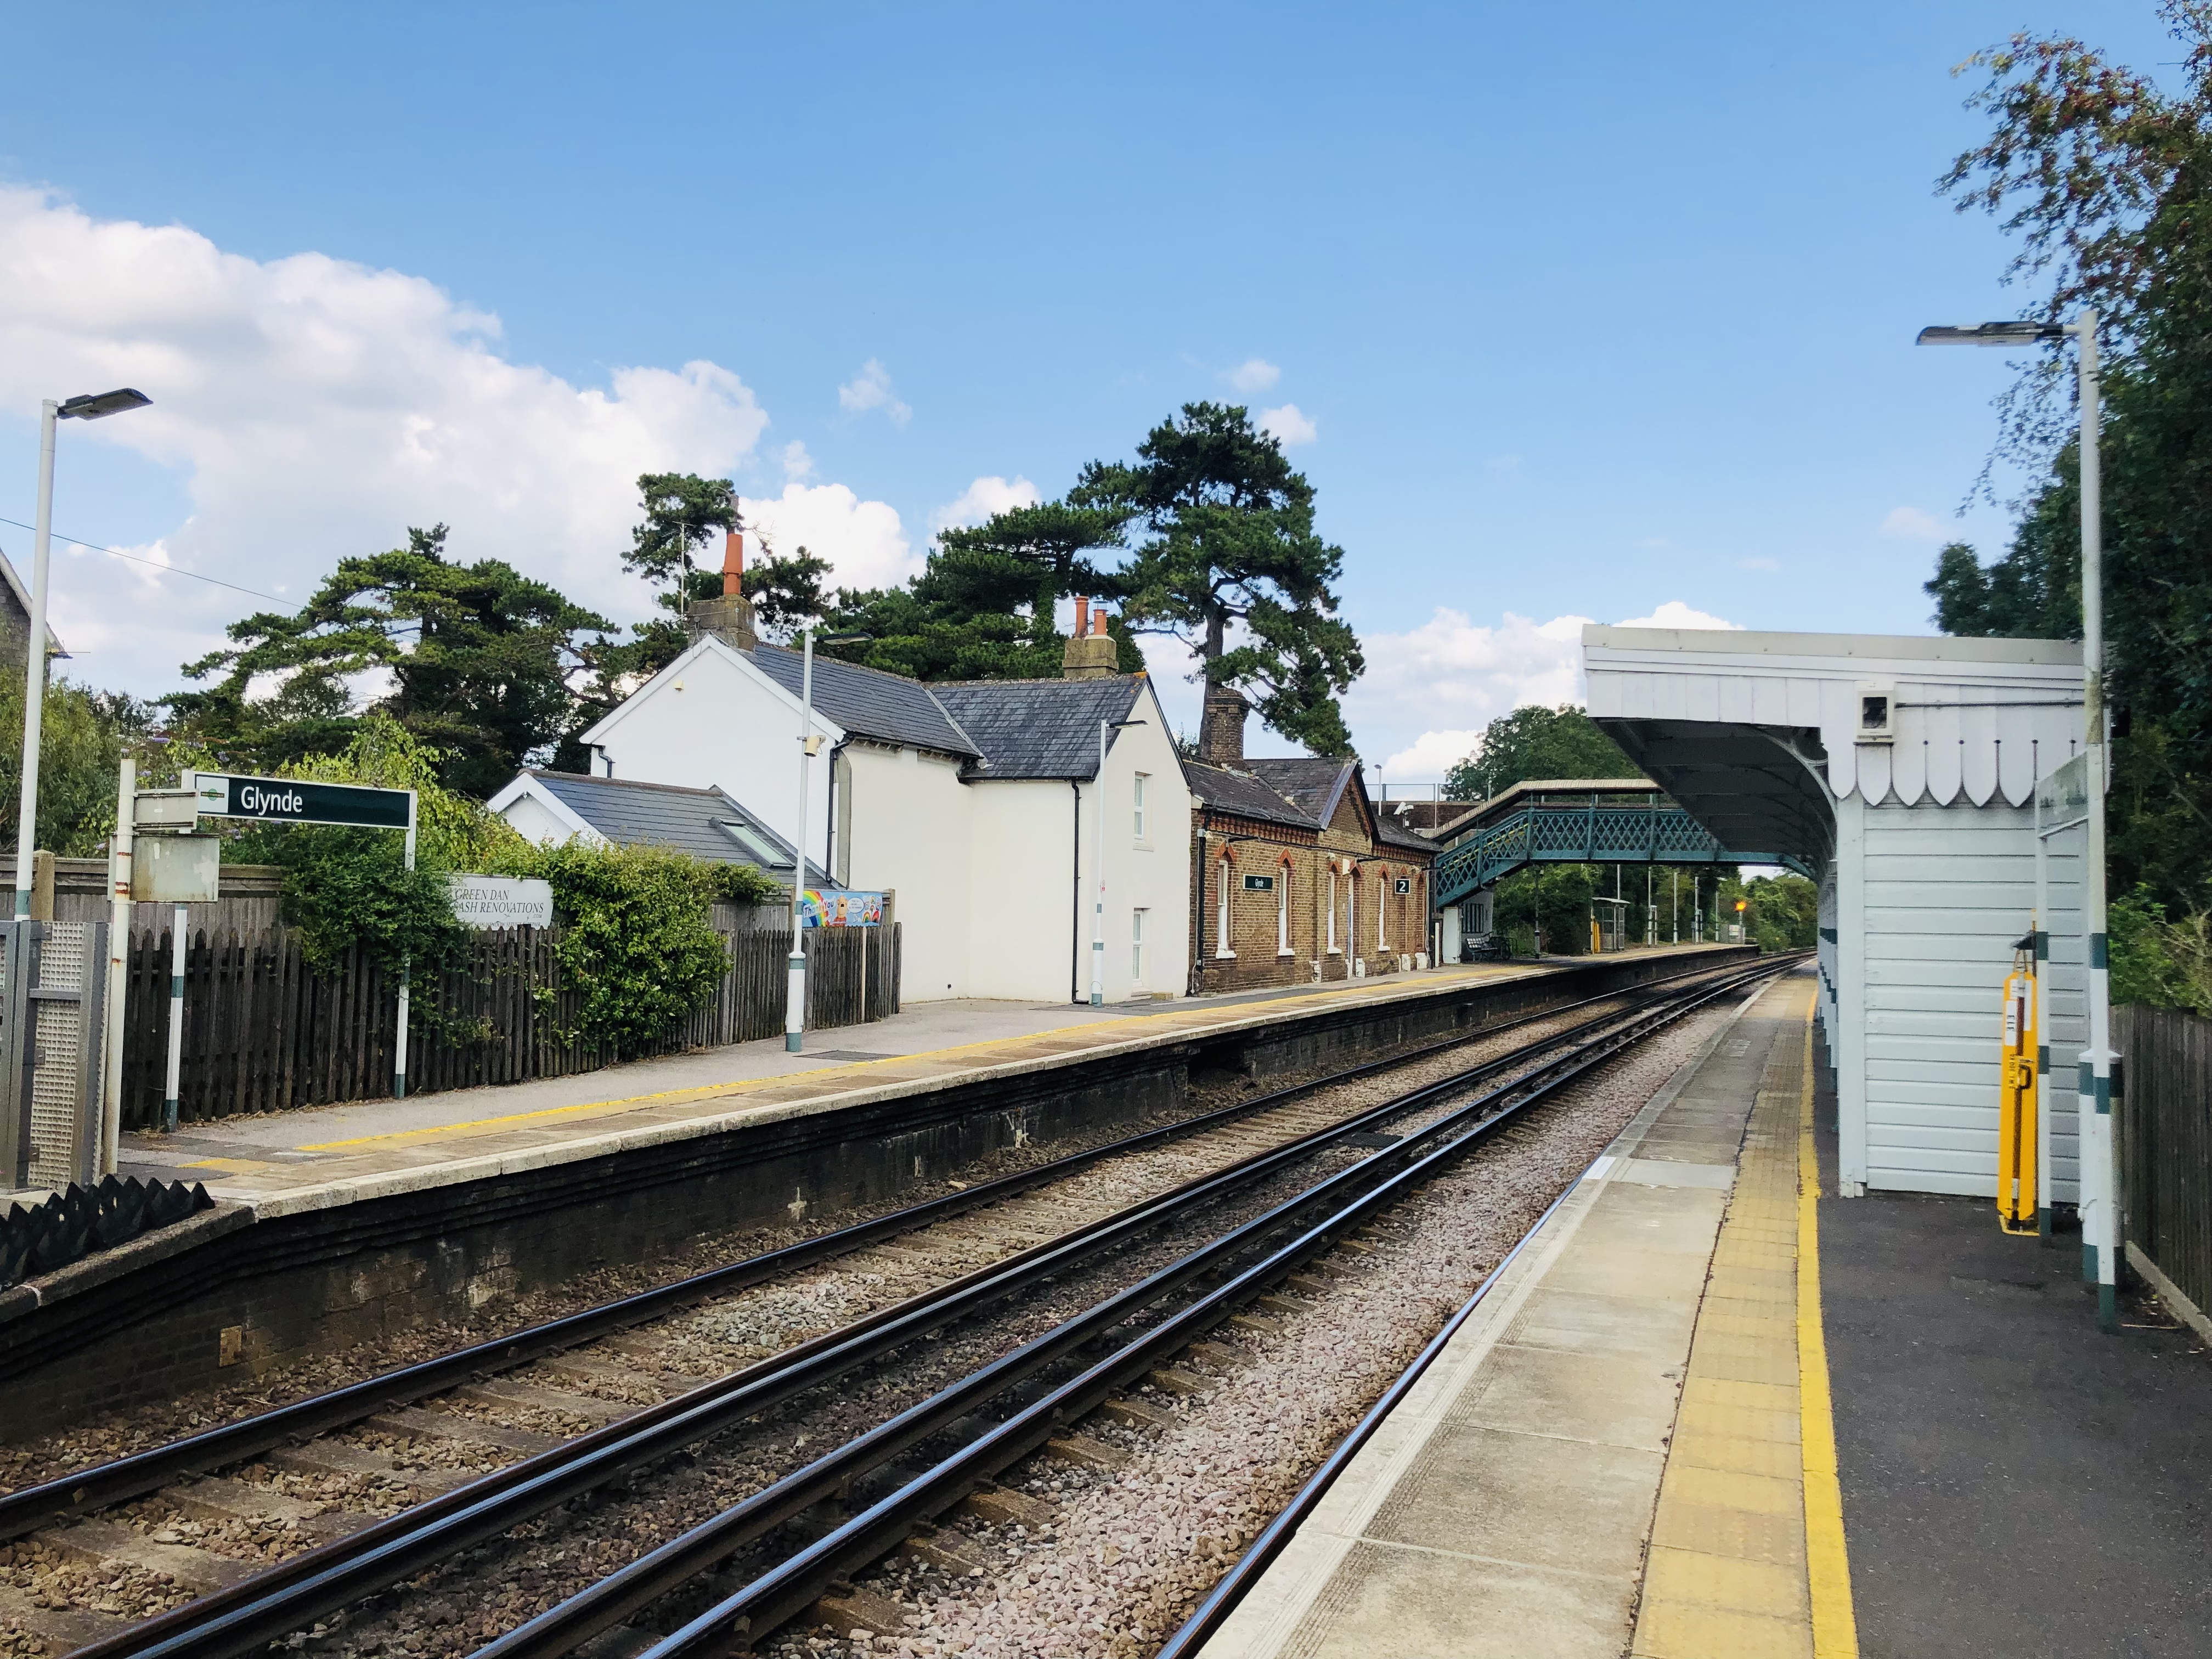 Glynde railway station